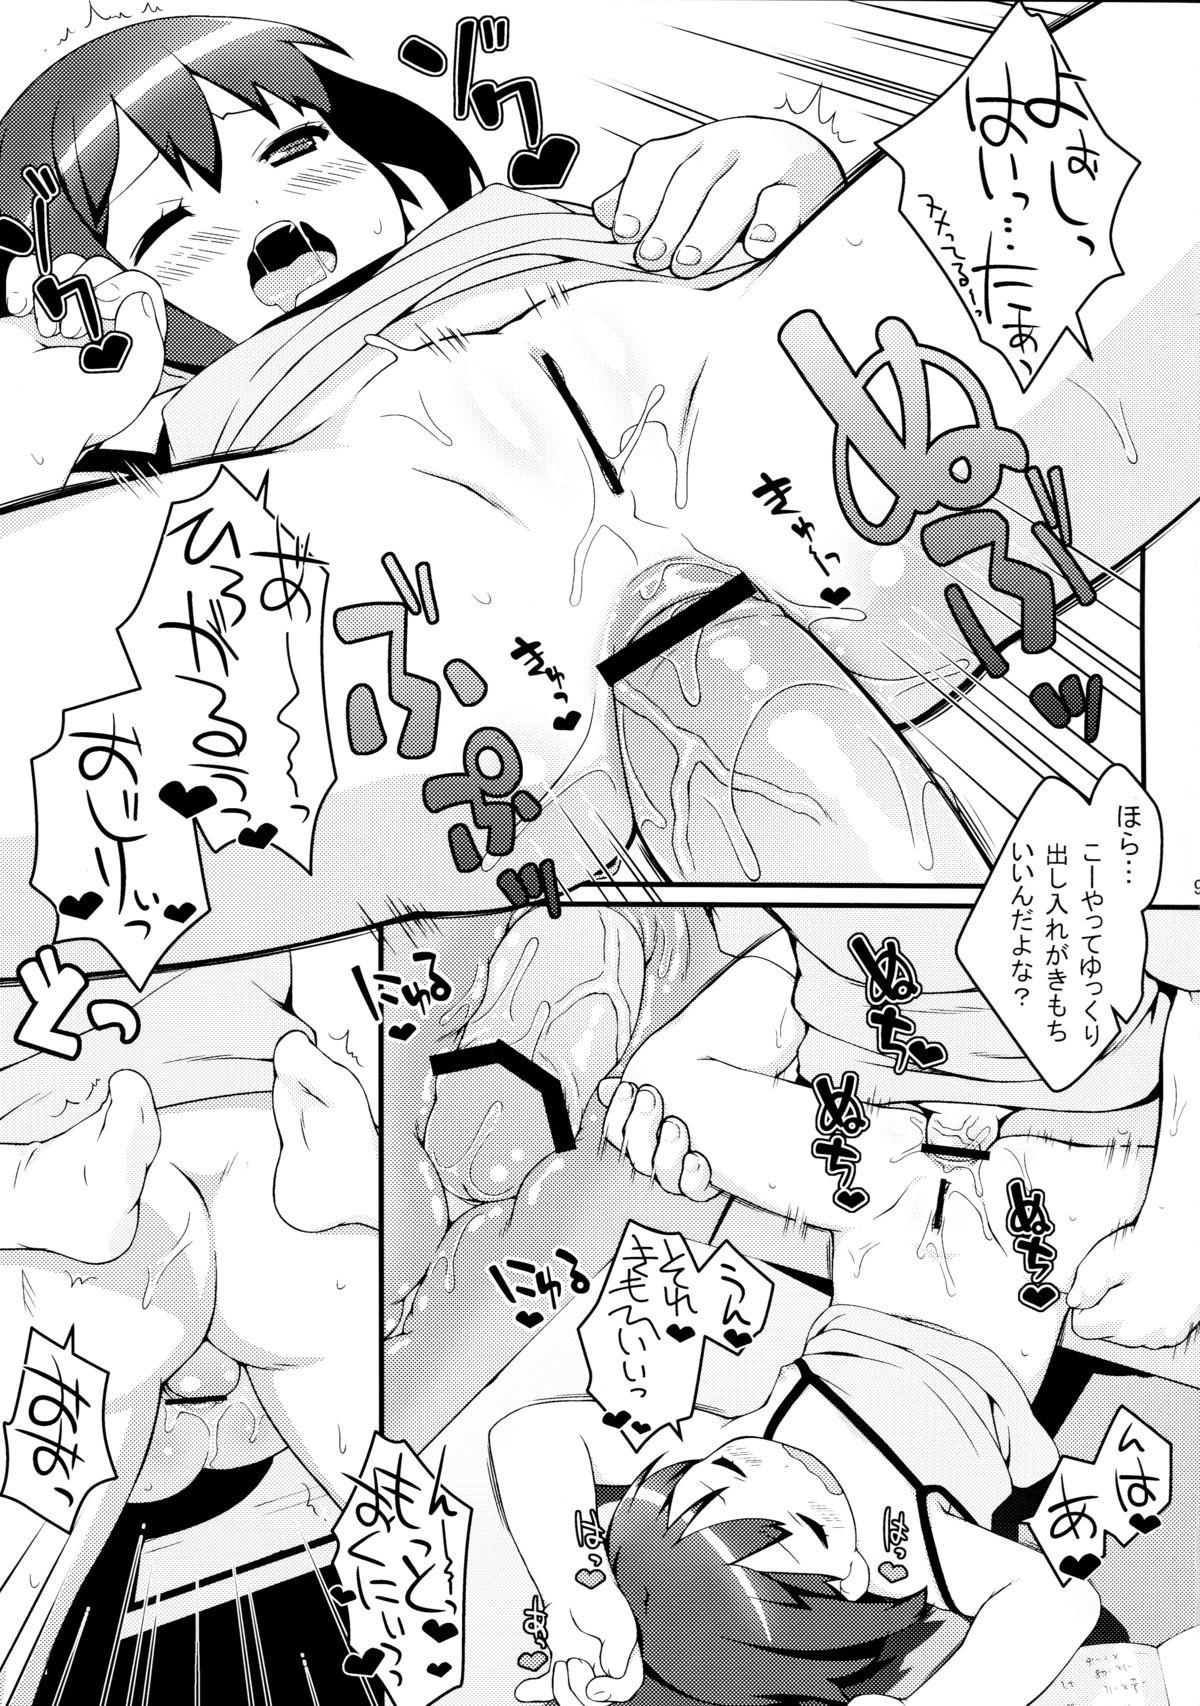 Gostoso Imouto ni mo Koi ga Shitai - Chuunibyou demo koi ga shitai Fitness - Page 9